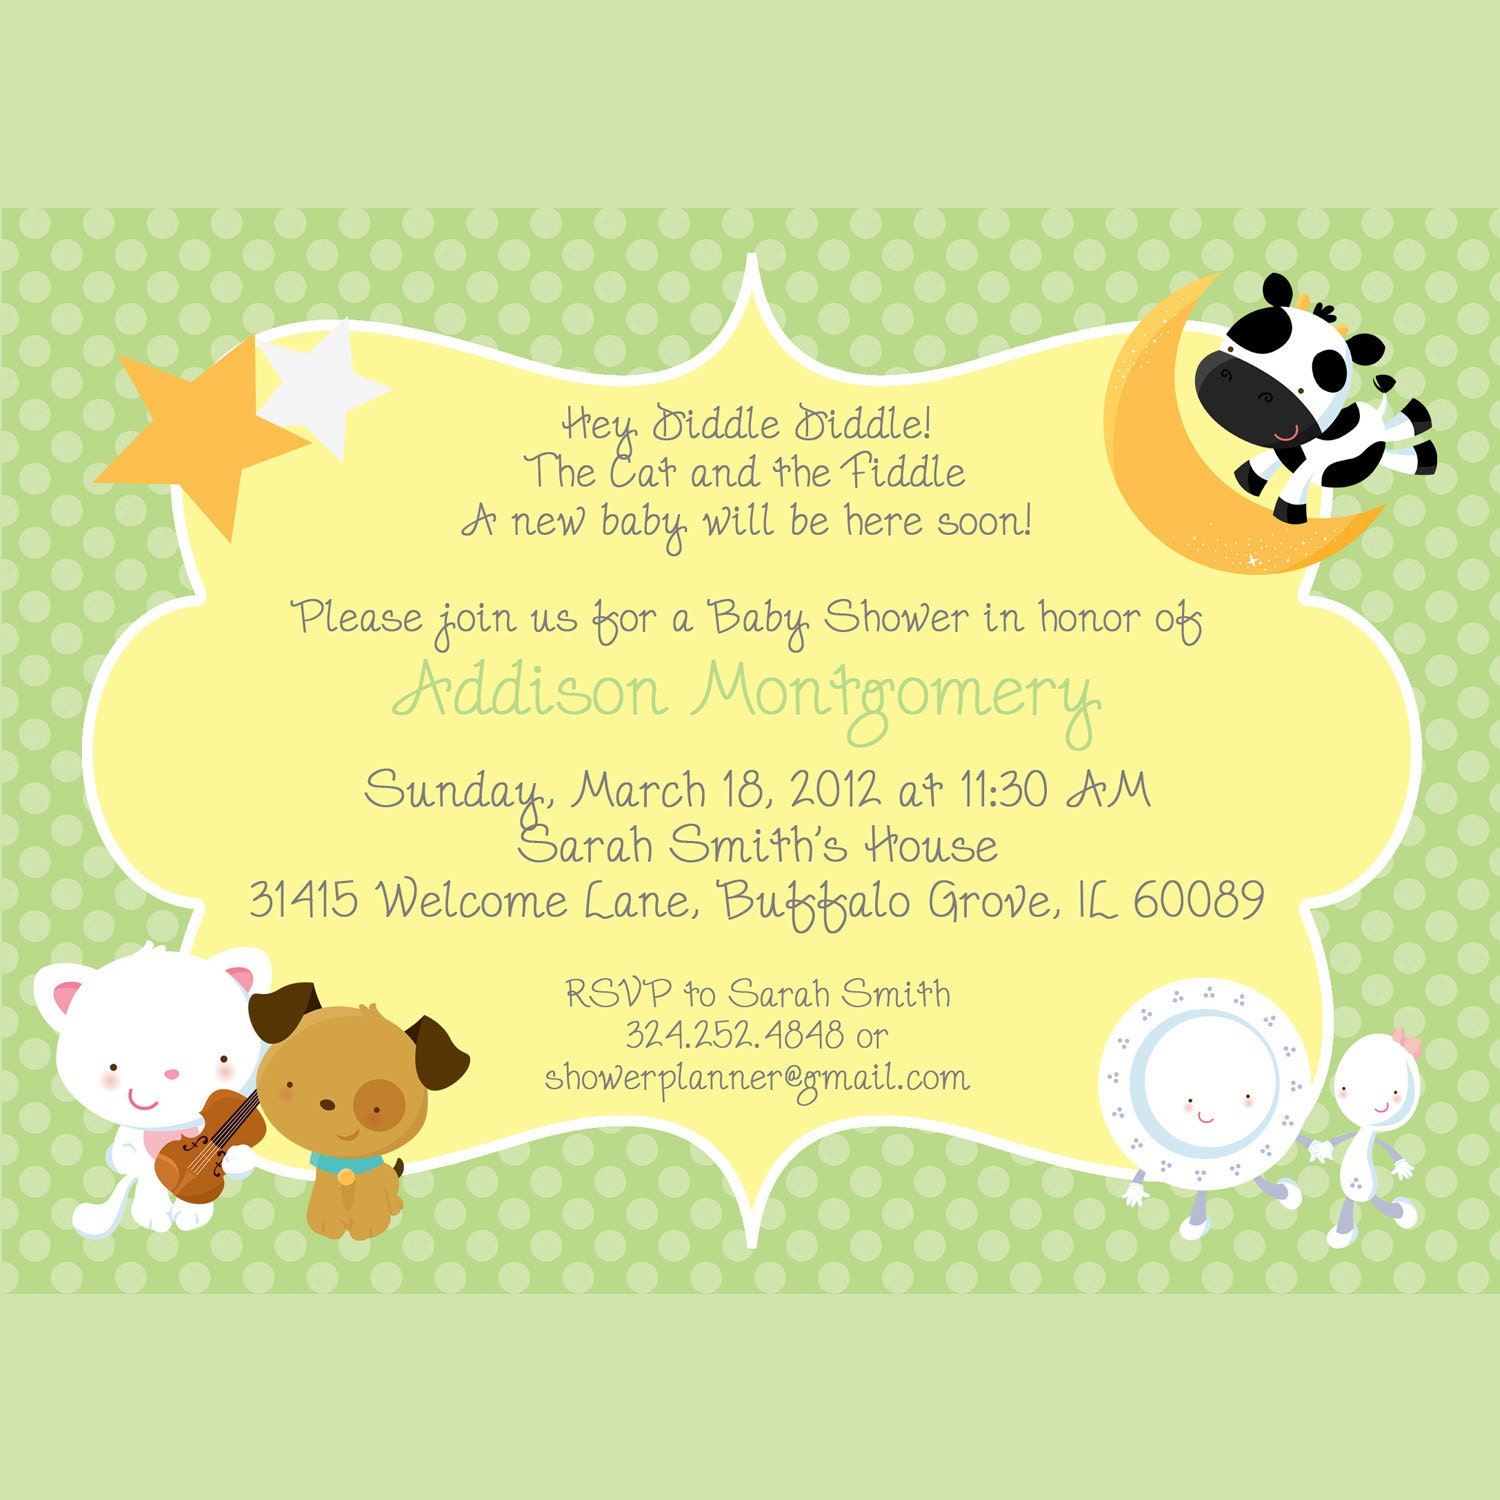 Nursery Rhymes Baby Shower Invitation Printable by cardsbycarolyn